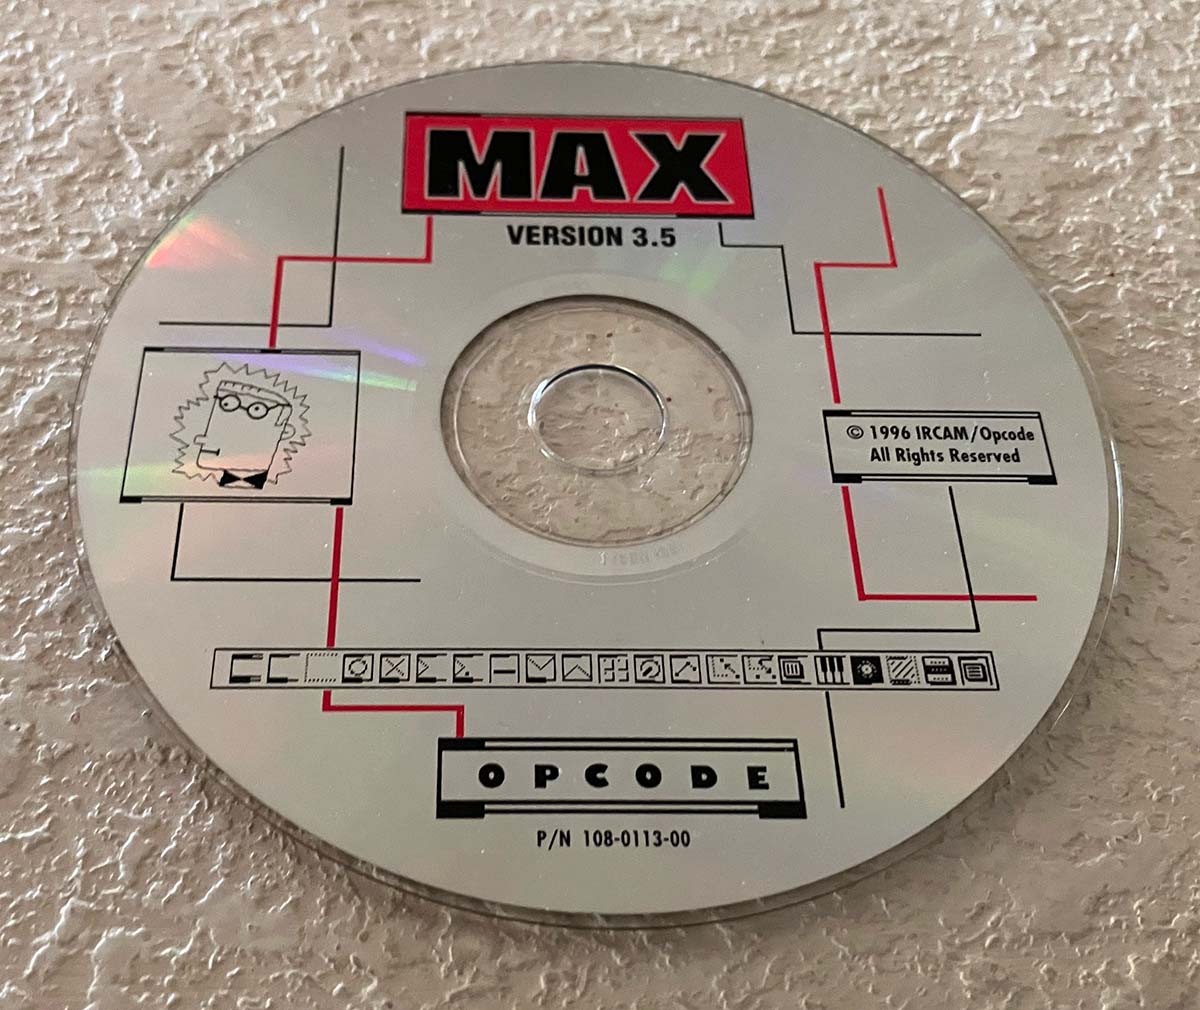 Max CD-ROM